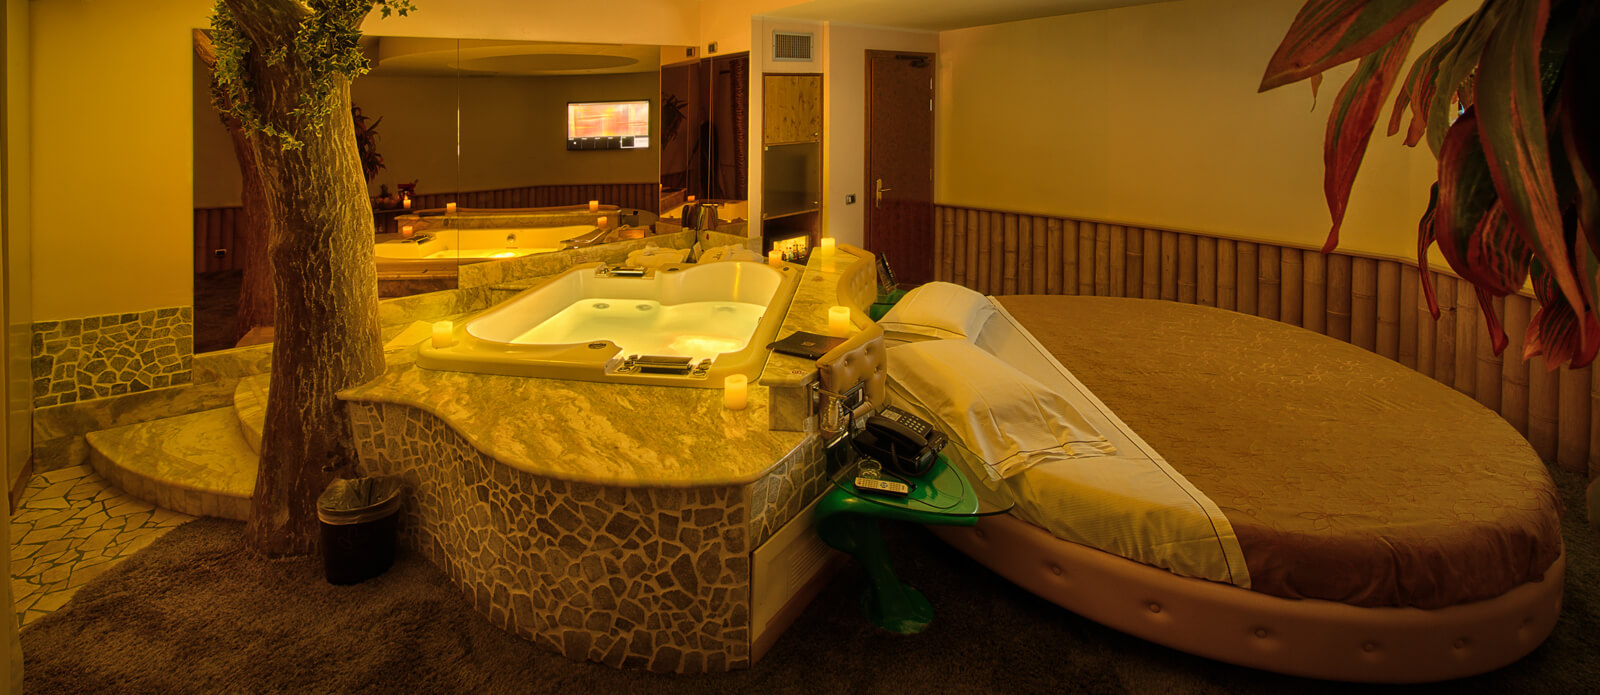 Motel K Senior Suite Natura vista sulla vasca idromassaggio doppia dietro al letto rotondo matrimoniale, servizio candele in suite camera a tema naturalistico